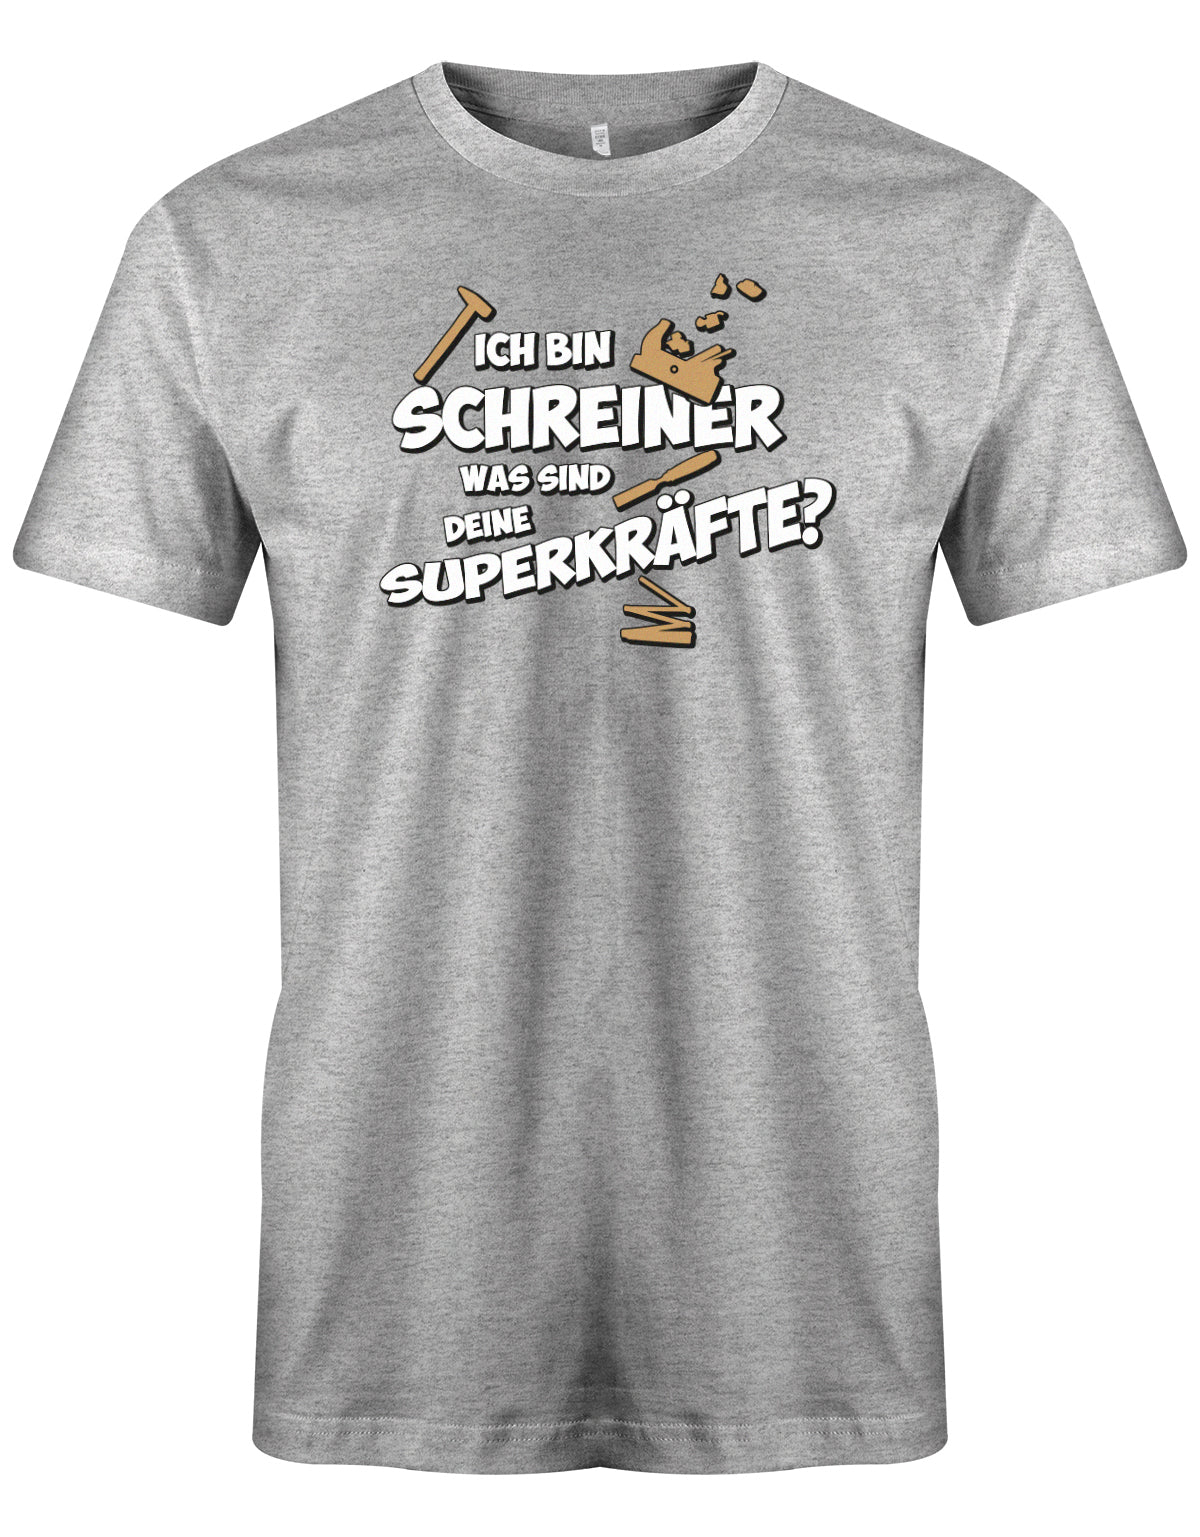 Schreiner und Tischler Shirt. Männer Shirt bedruckt mit: Ich bin Schreiner was sind deine Superkräfte? Grau